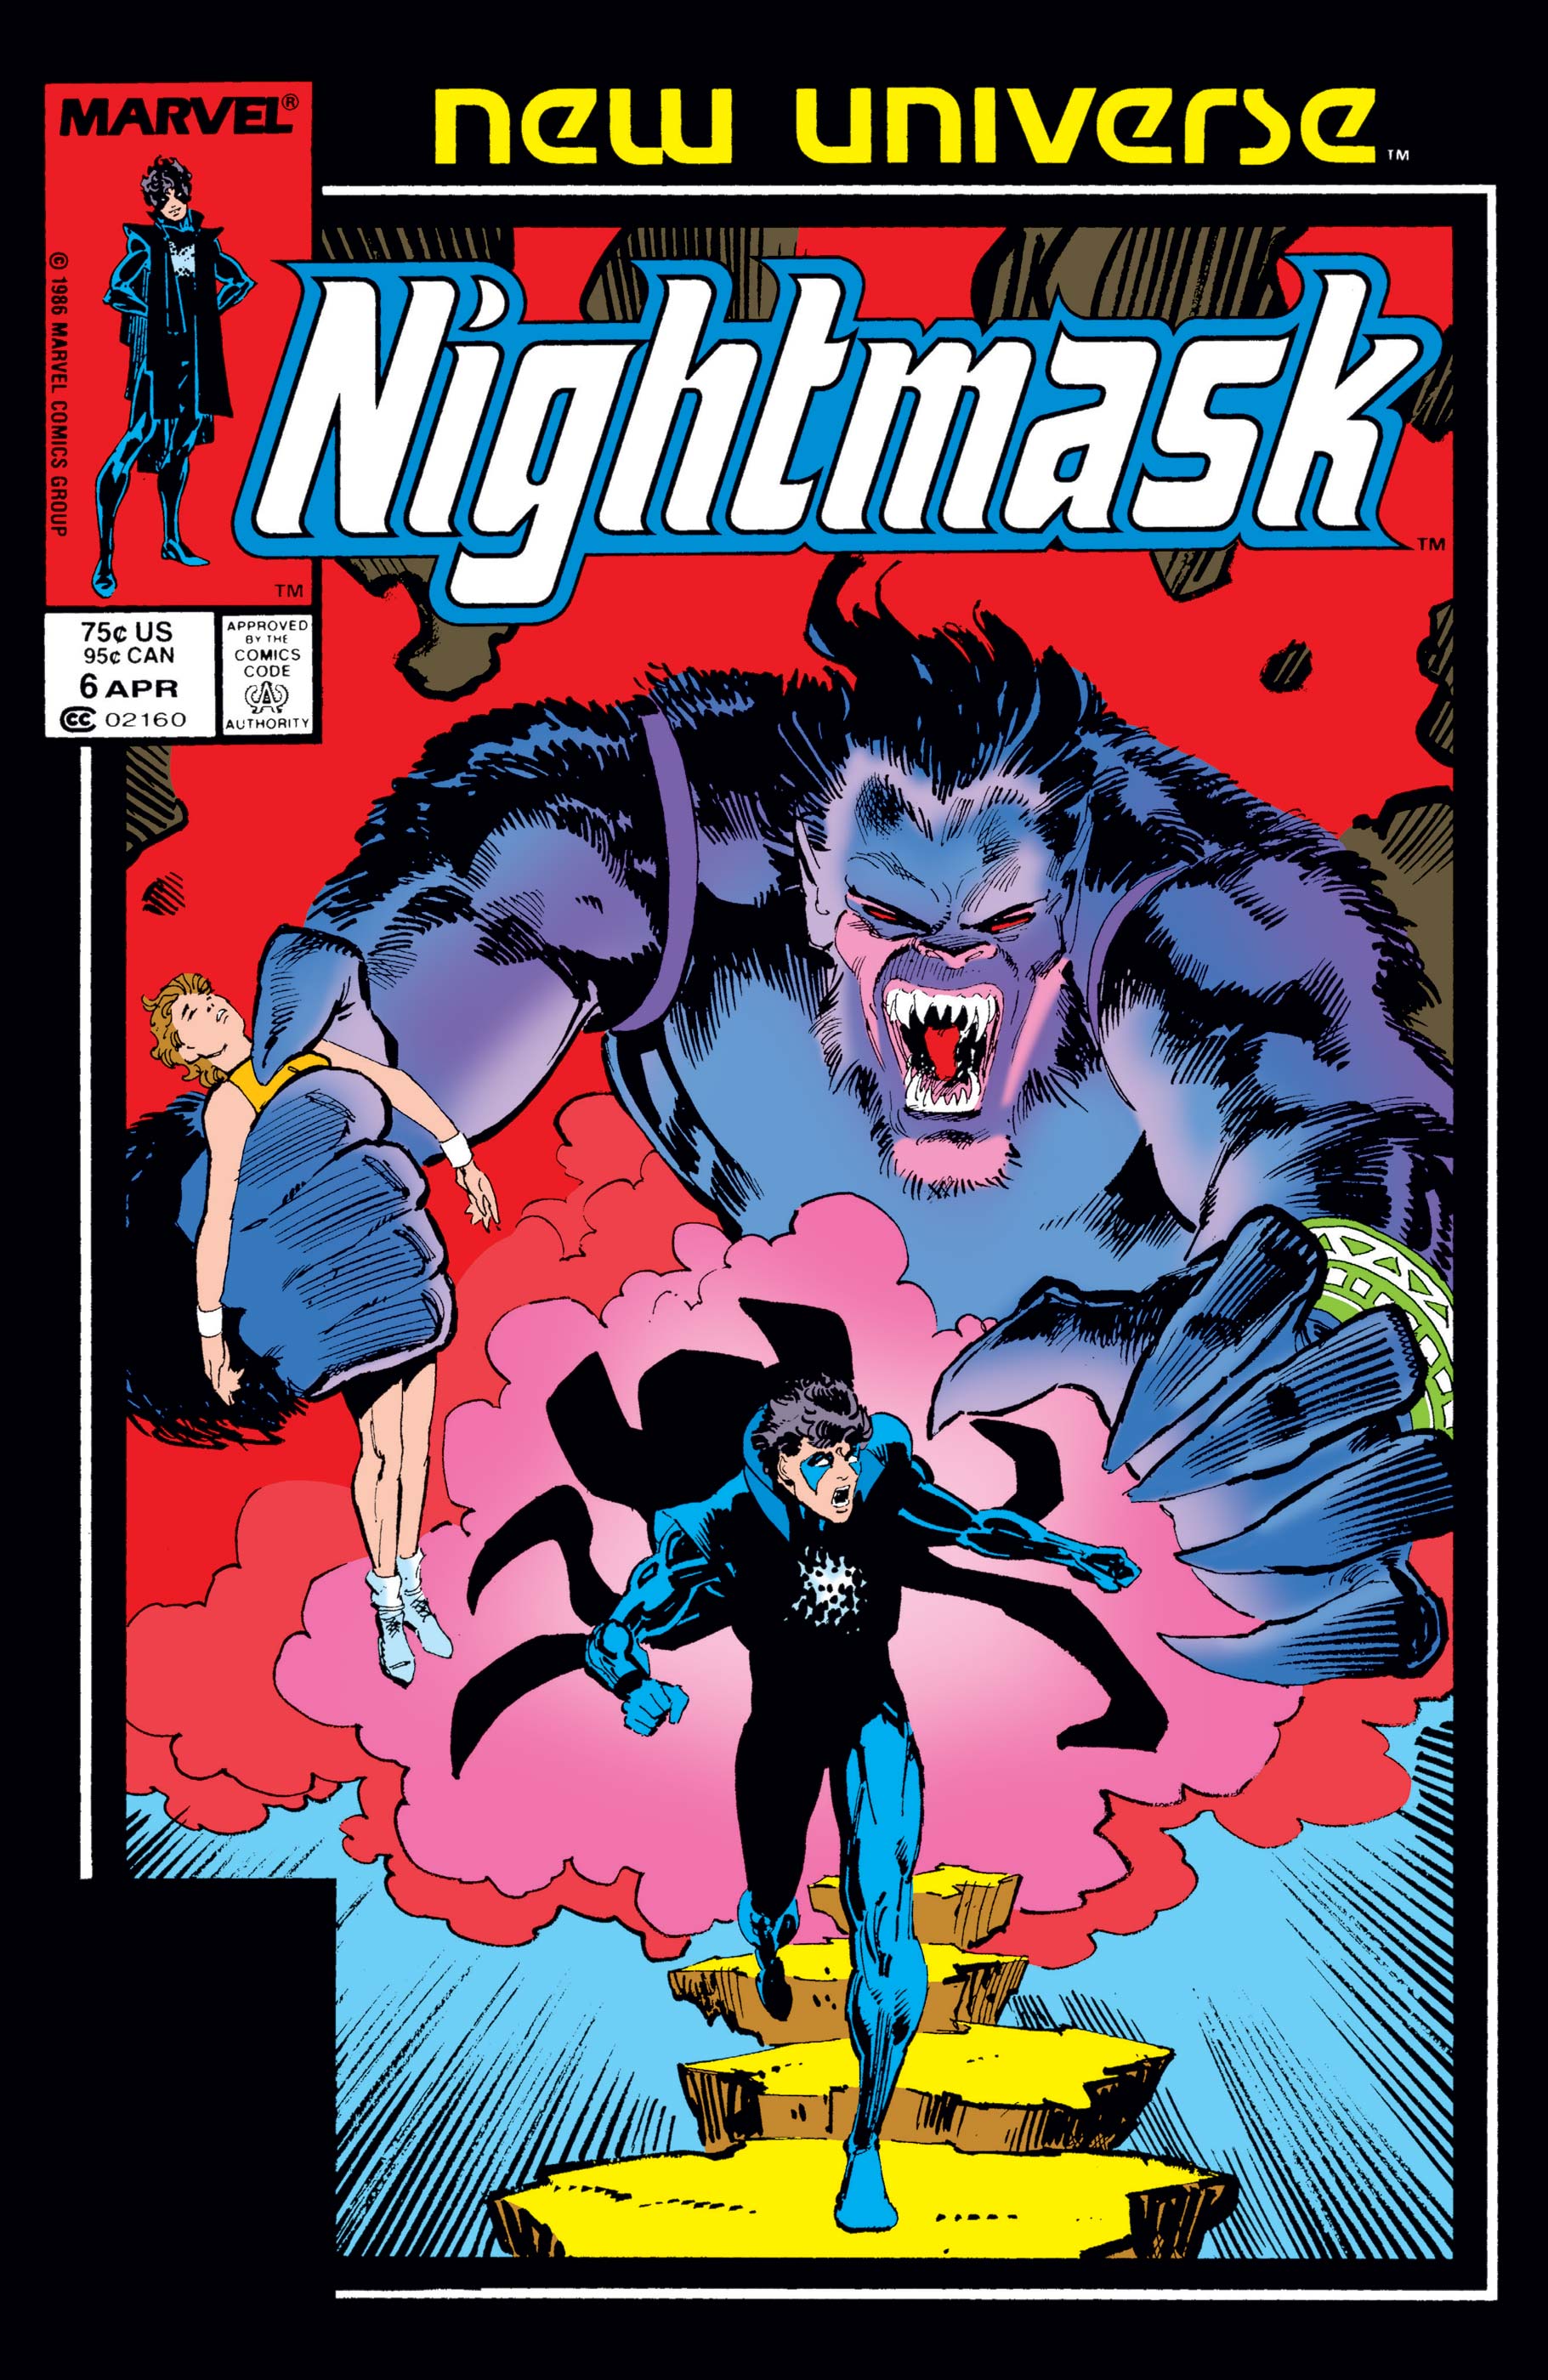 Nightmask (1986) #6